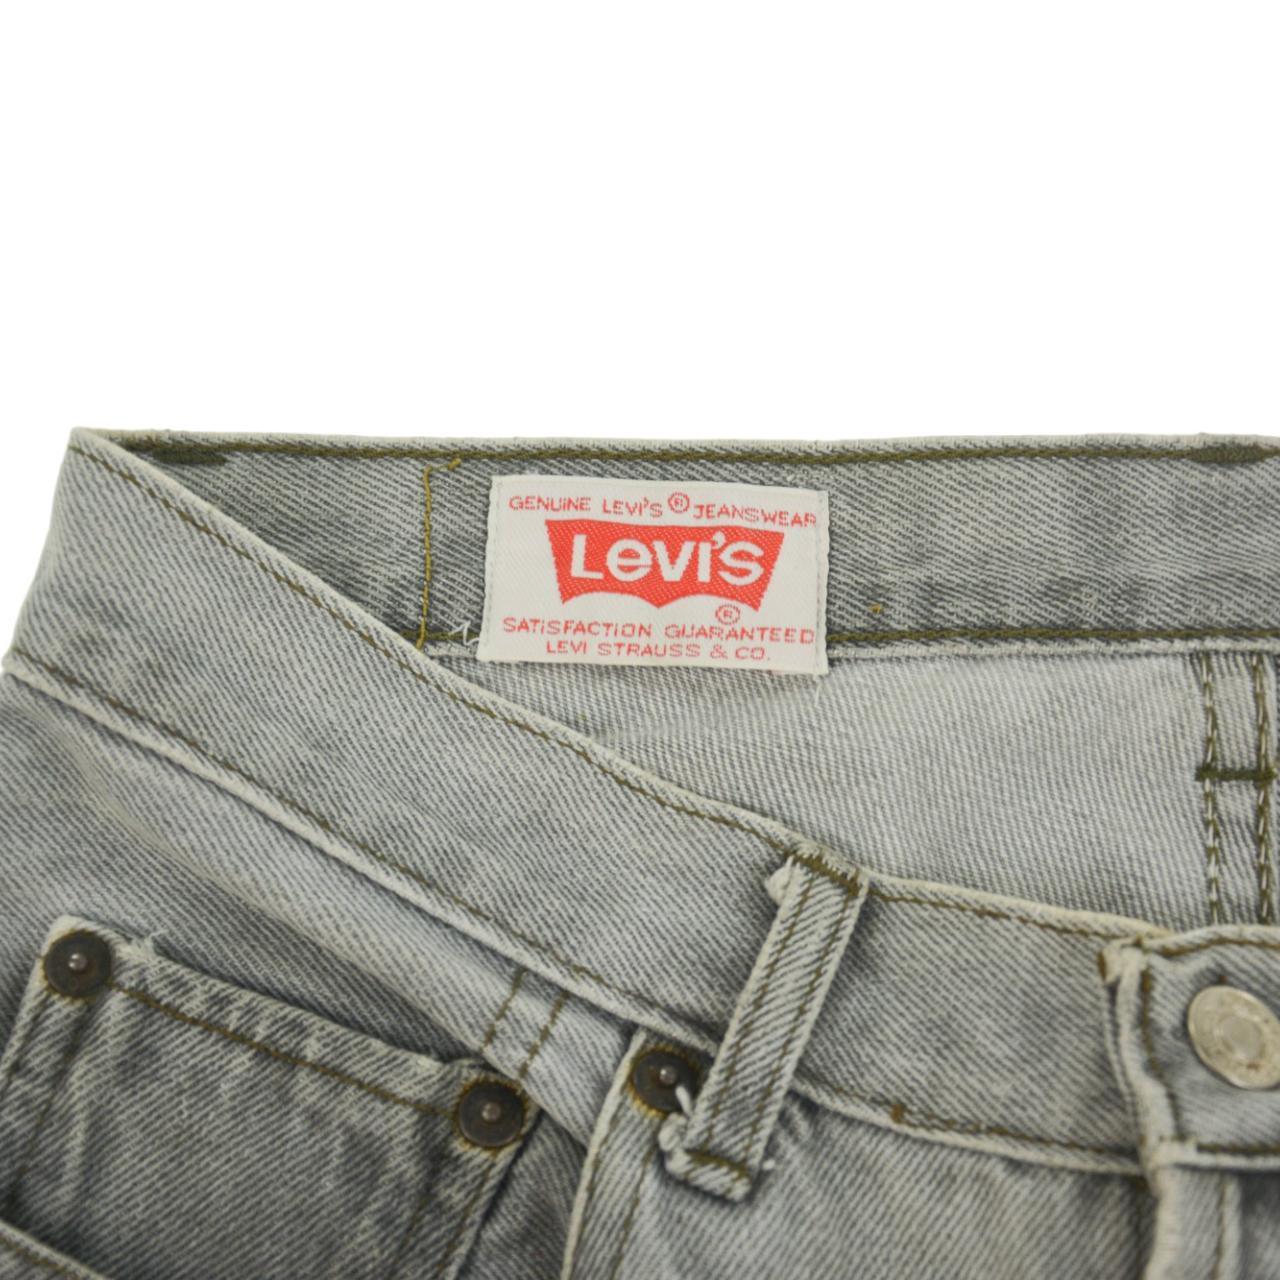 Vintage Levi's Jeans Size Waist 30" - Known Source